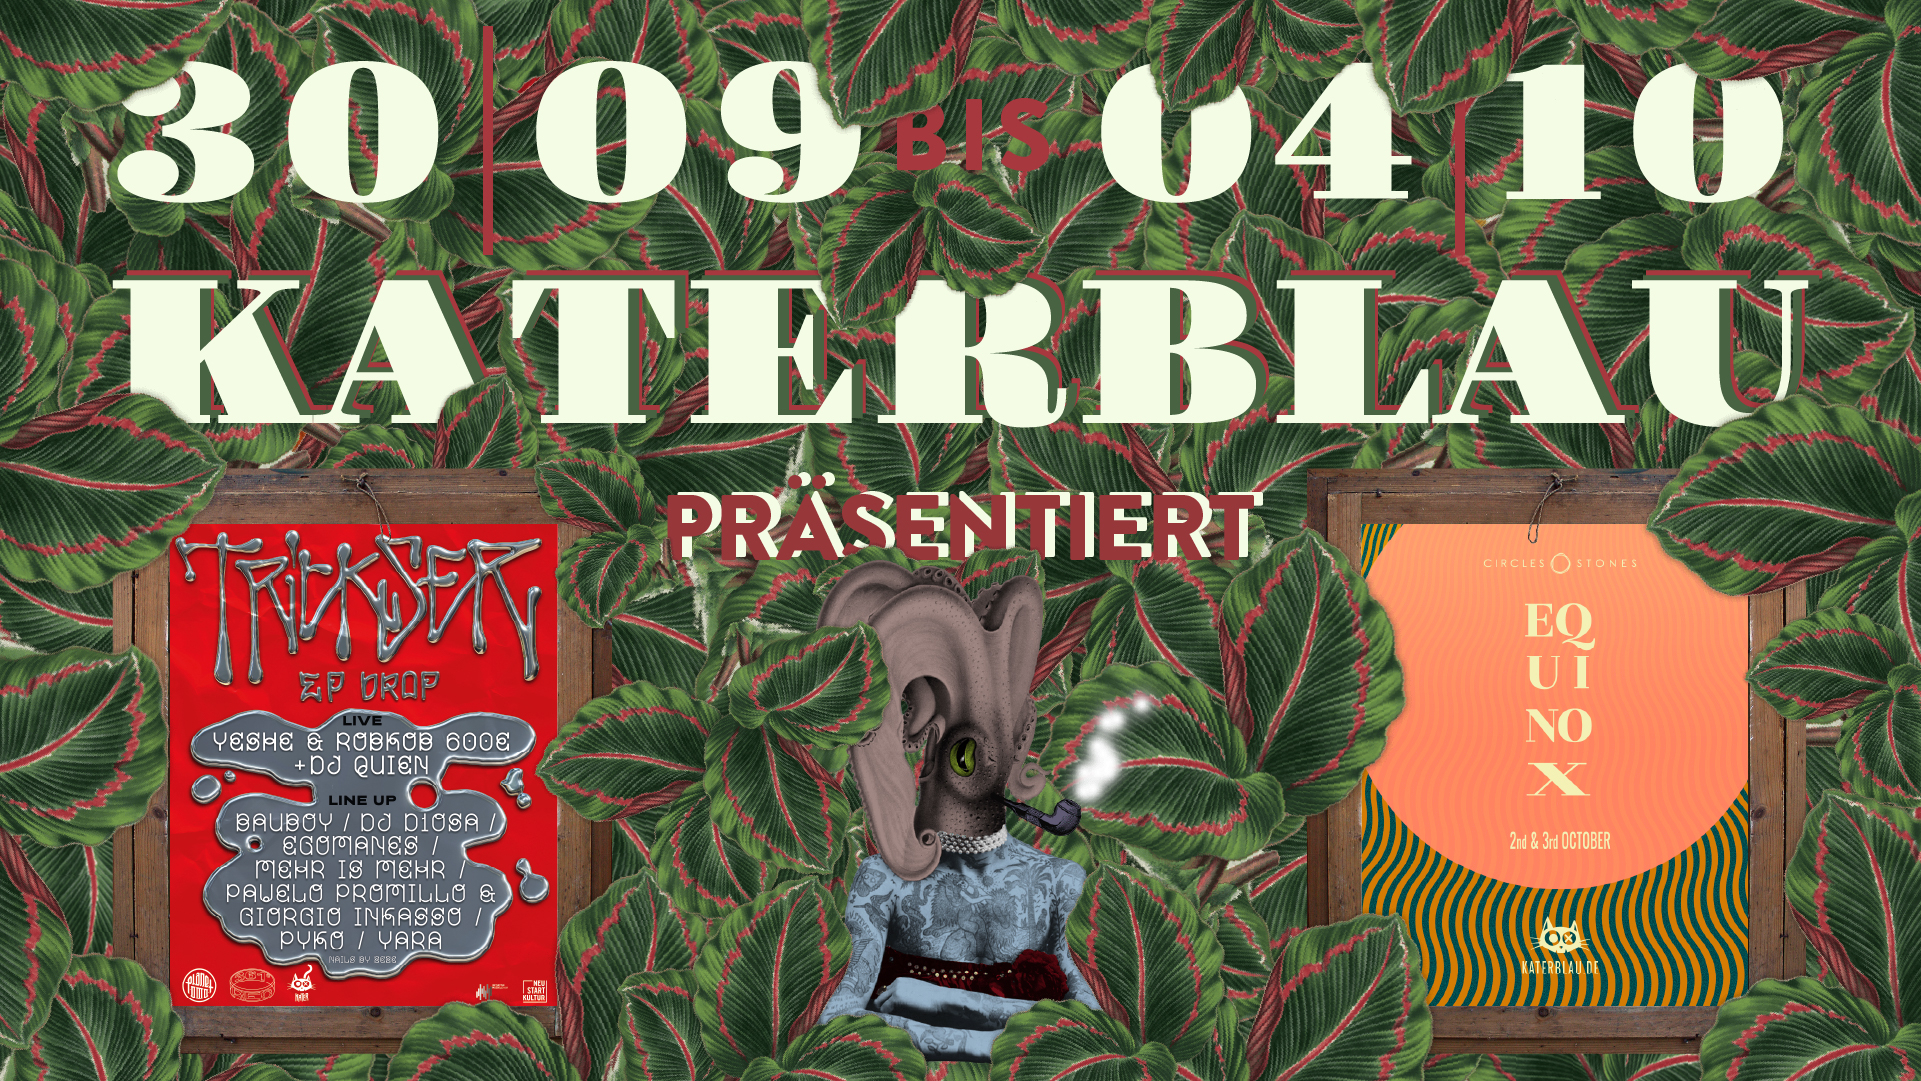 KaterBlau präsentiert 361° Records und Circles & Stones - Flyer front